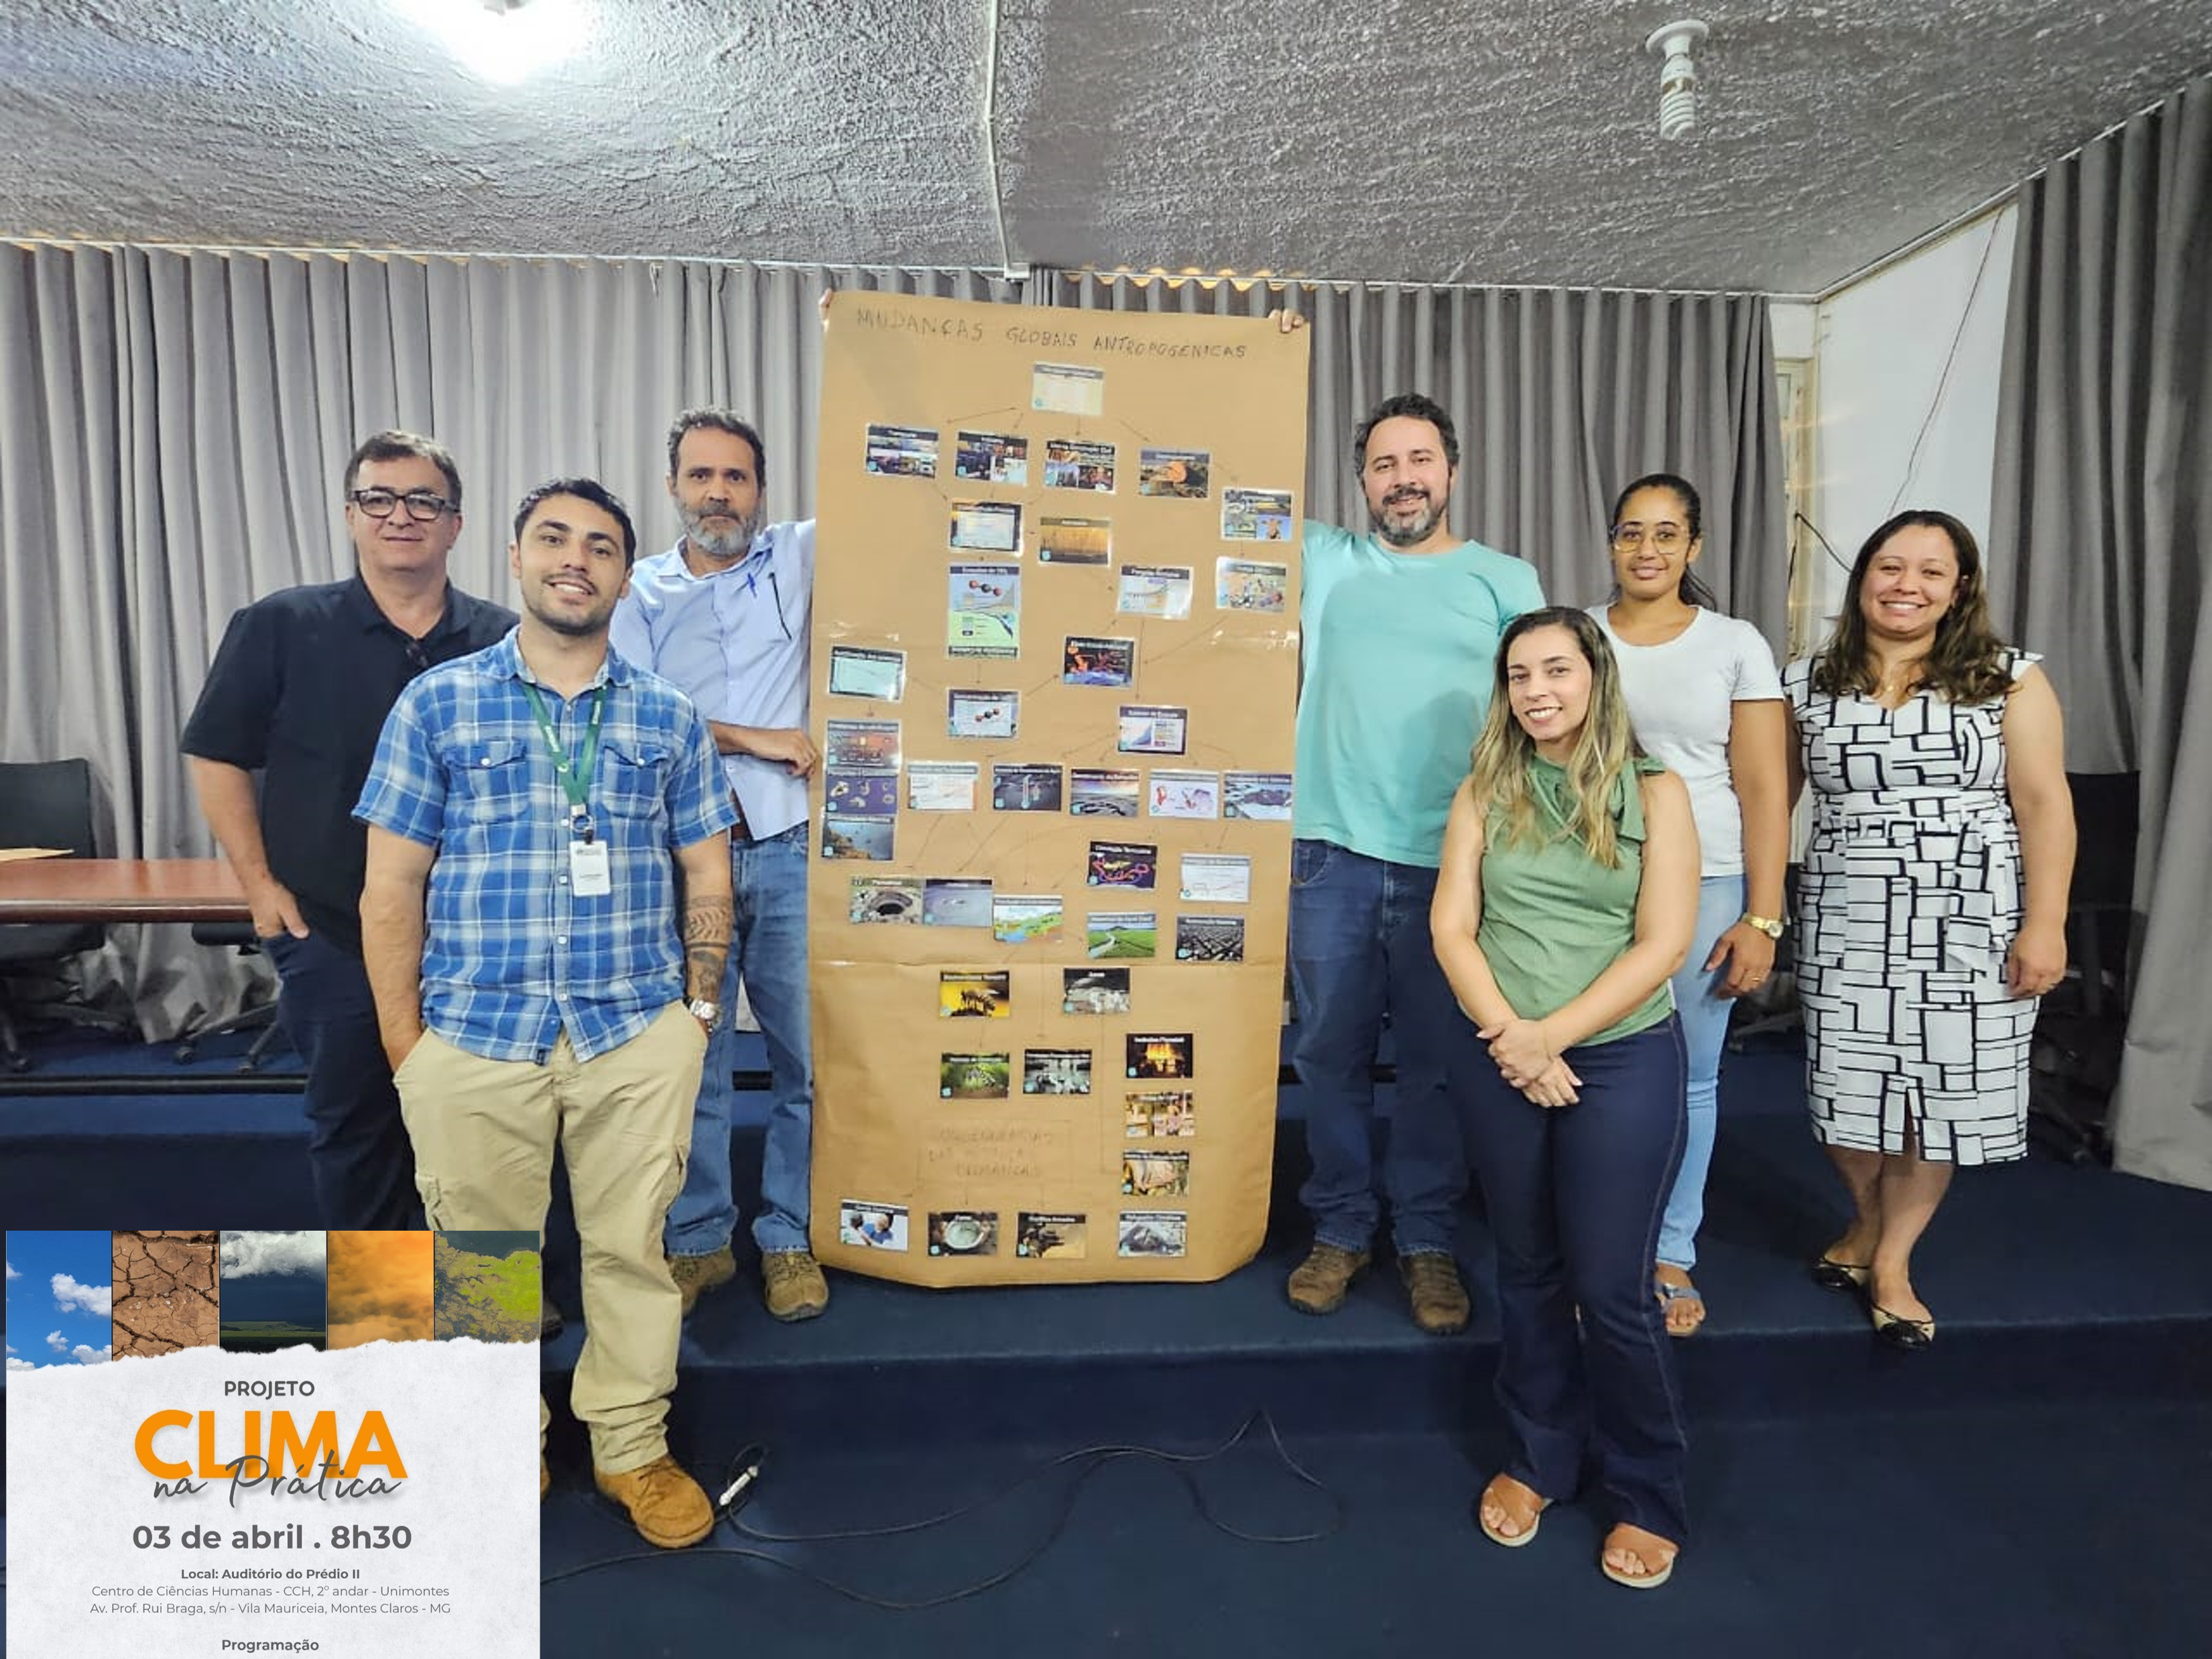 Equipe PPGEO e LAEUR participa do Projeto “Clima na Prática” em parceria com a SEMAD e Prefeitura de Montes Claros”